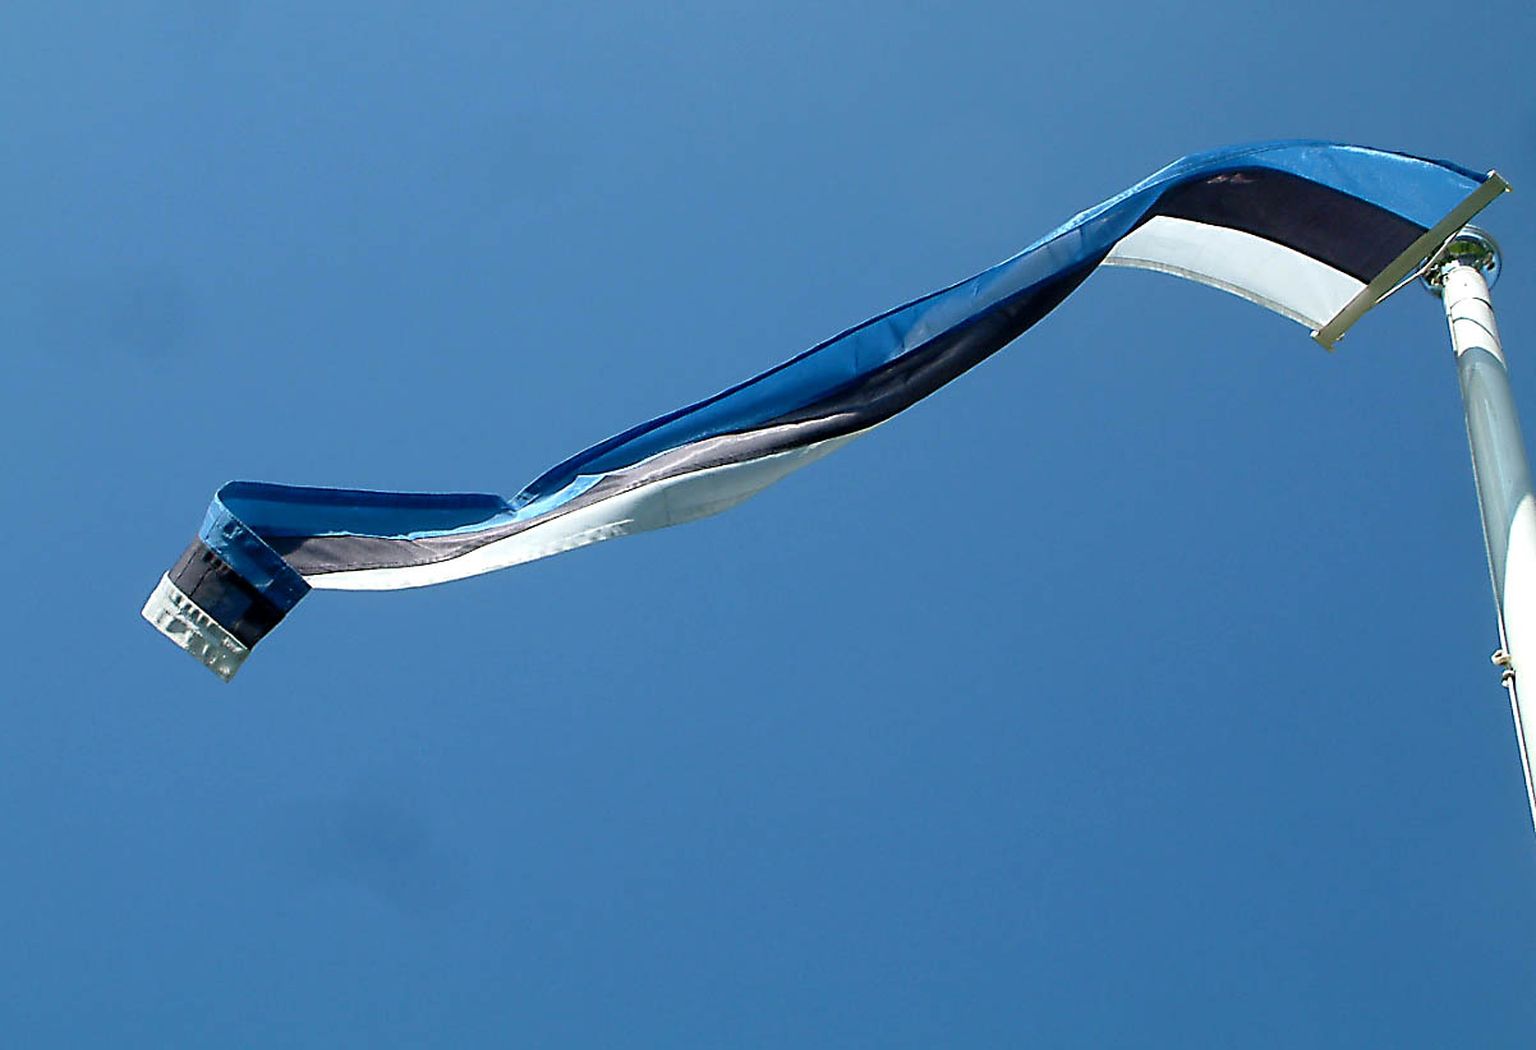 Ida-Viru omavalitsusliit loodab, et sinimustvalge lipu juubeliaastal korraldatud pidulikud üritused aitavad kaasa trikoloori laiemale kasutusele maakonnas.